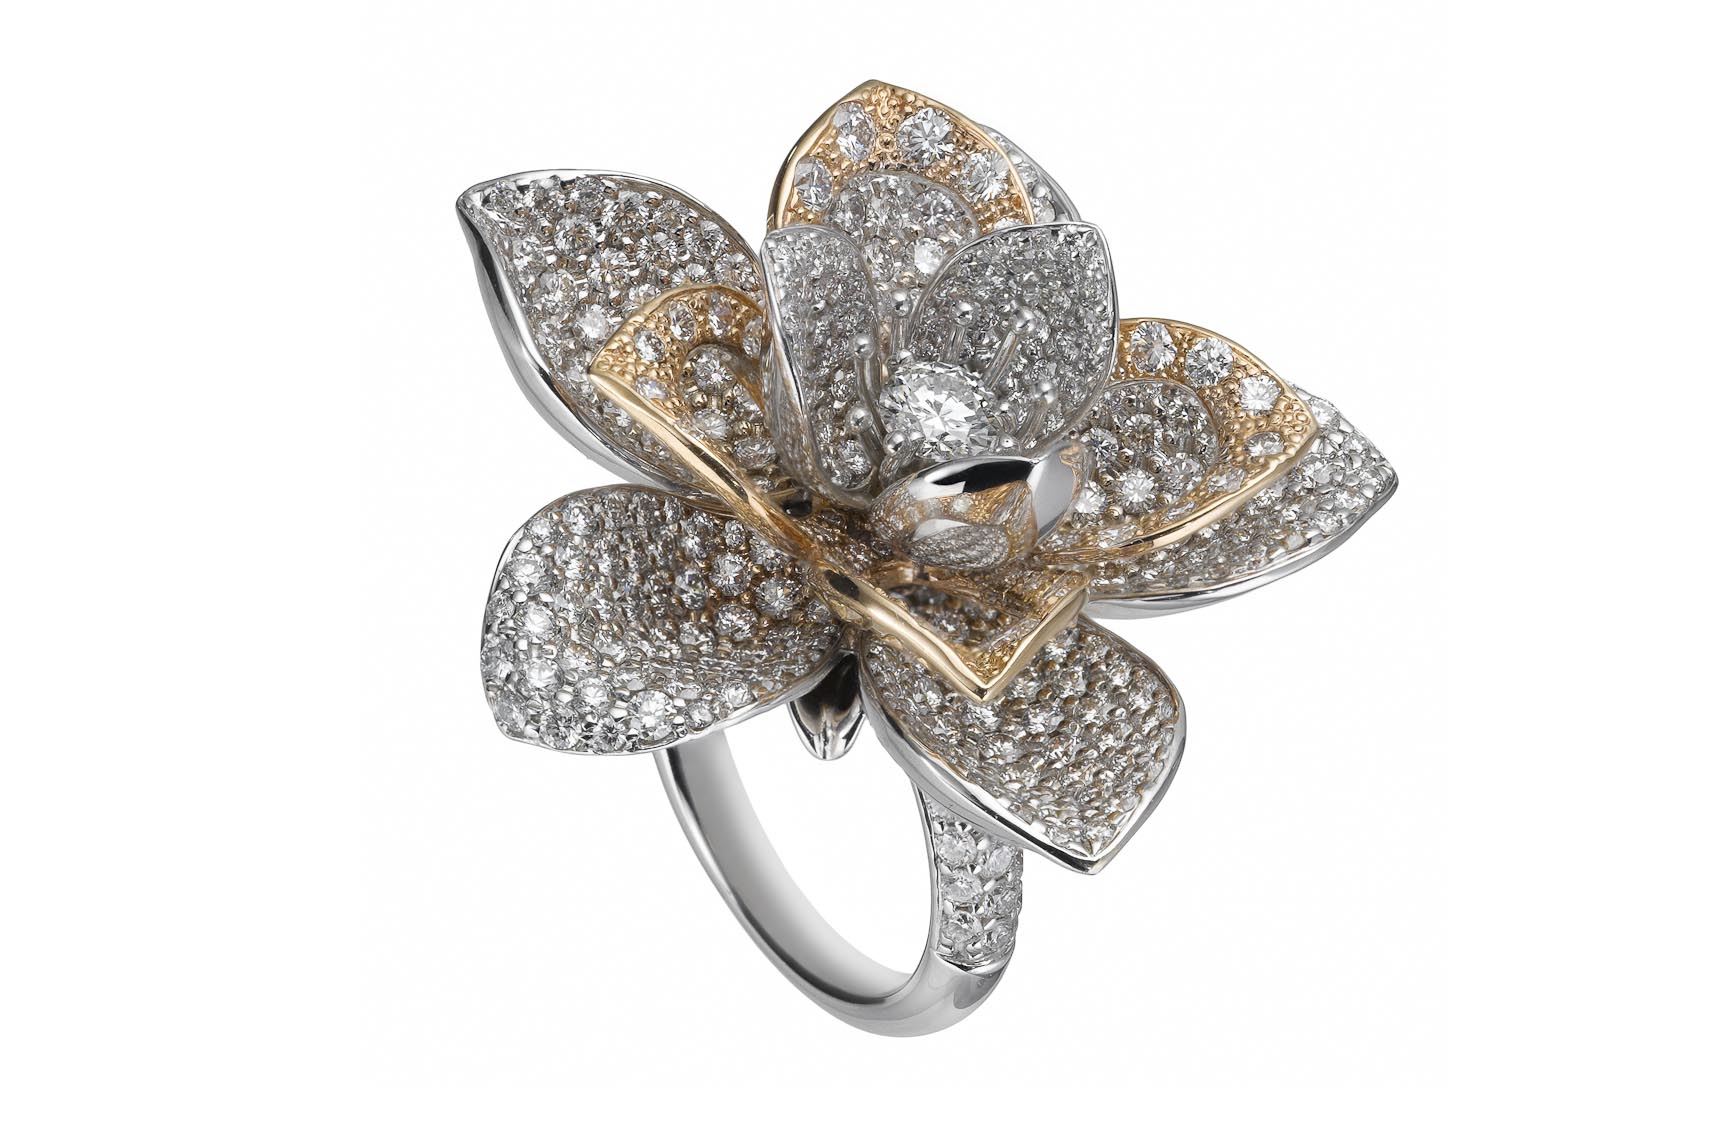 Jewelry Still Life, Diamond Ring by Gearys